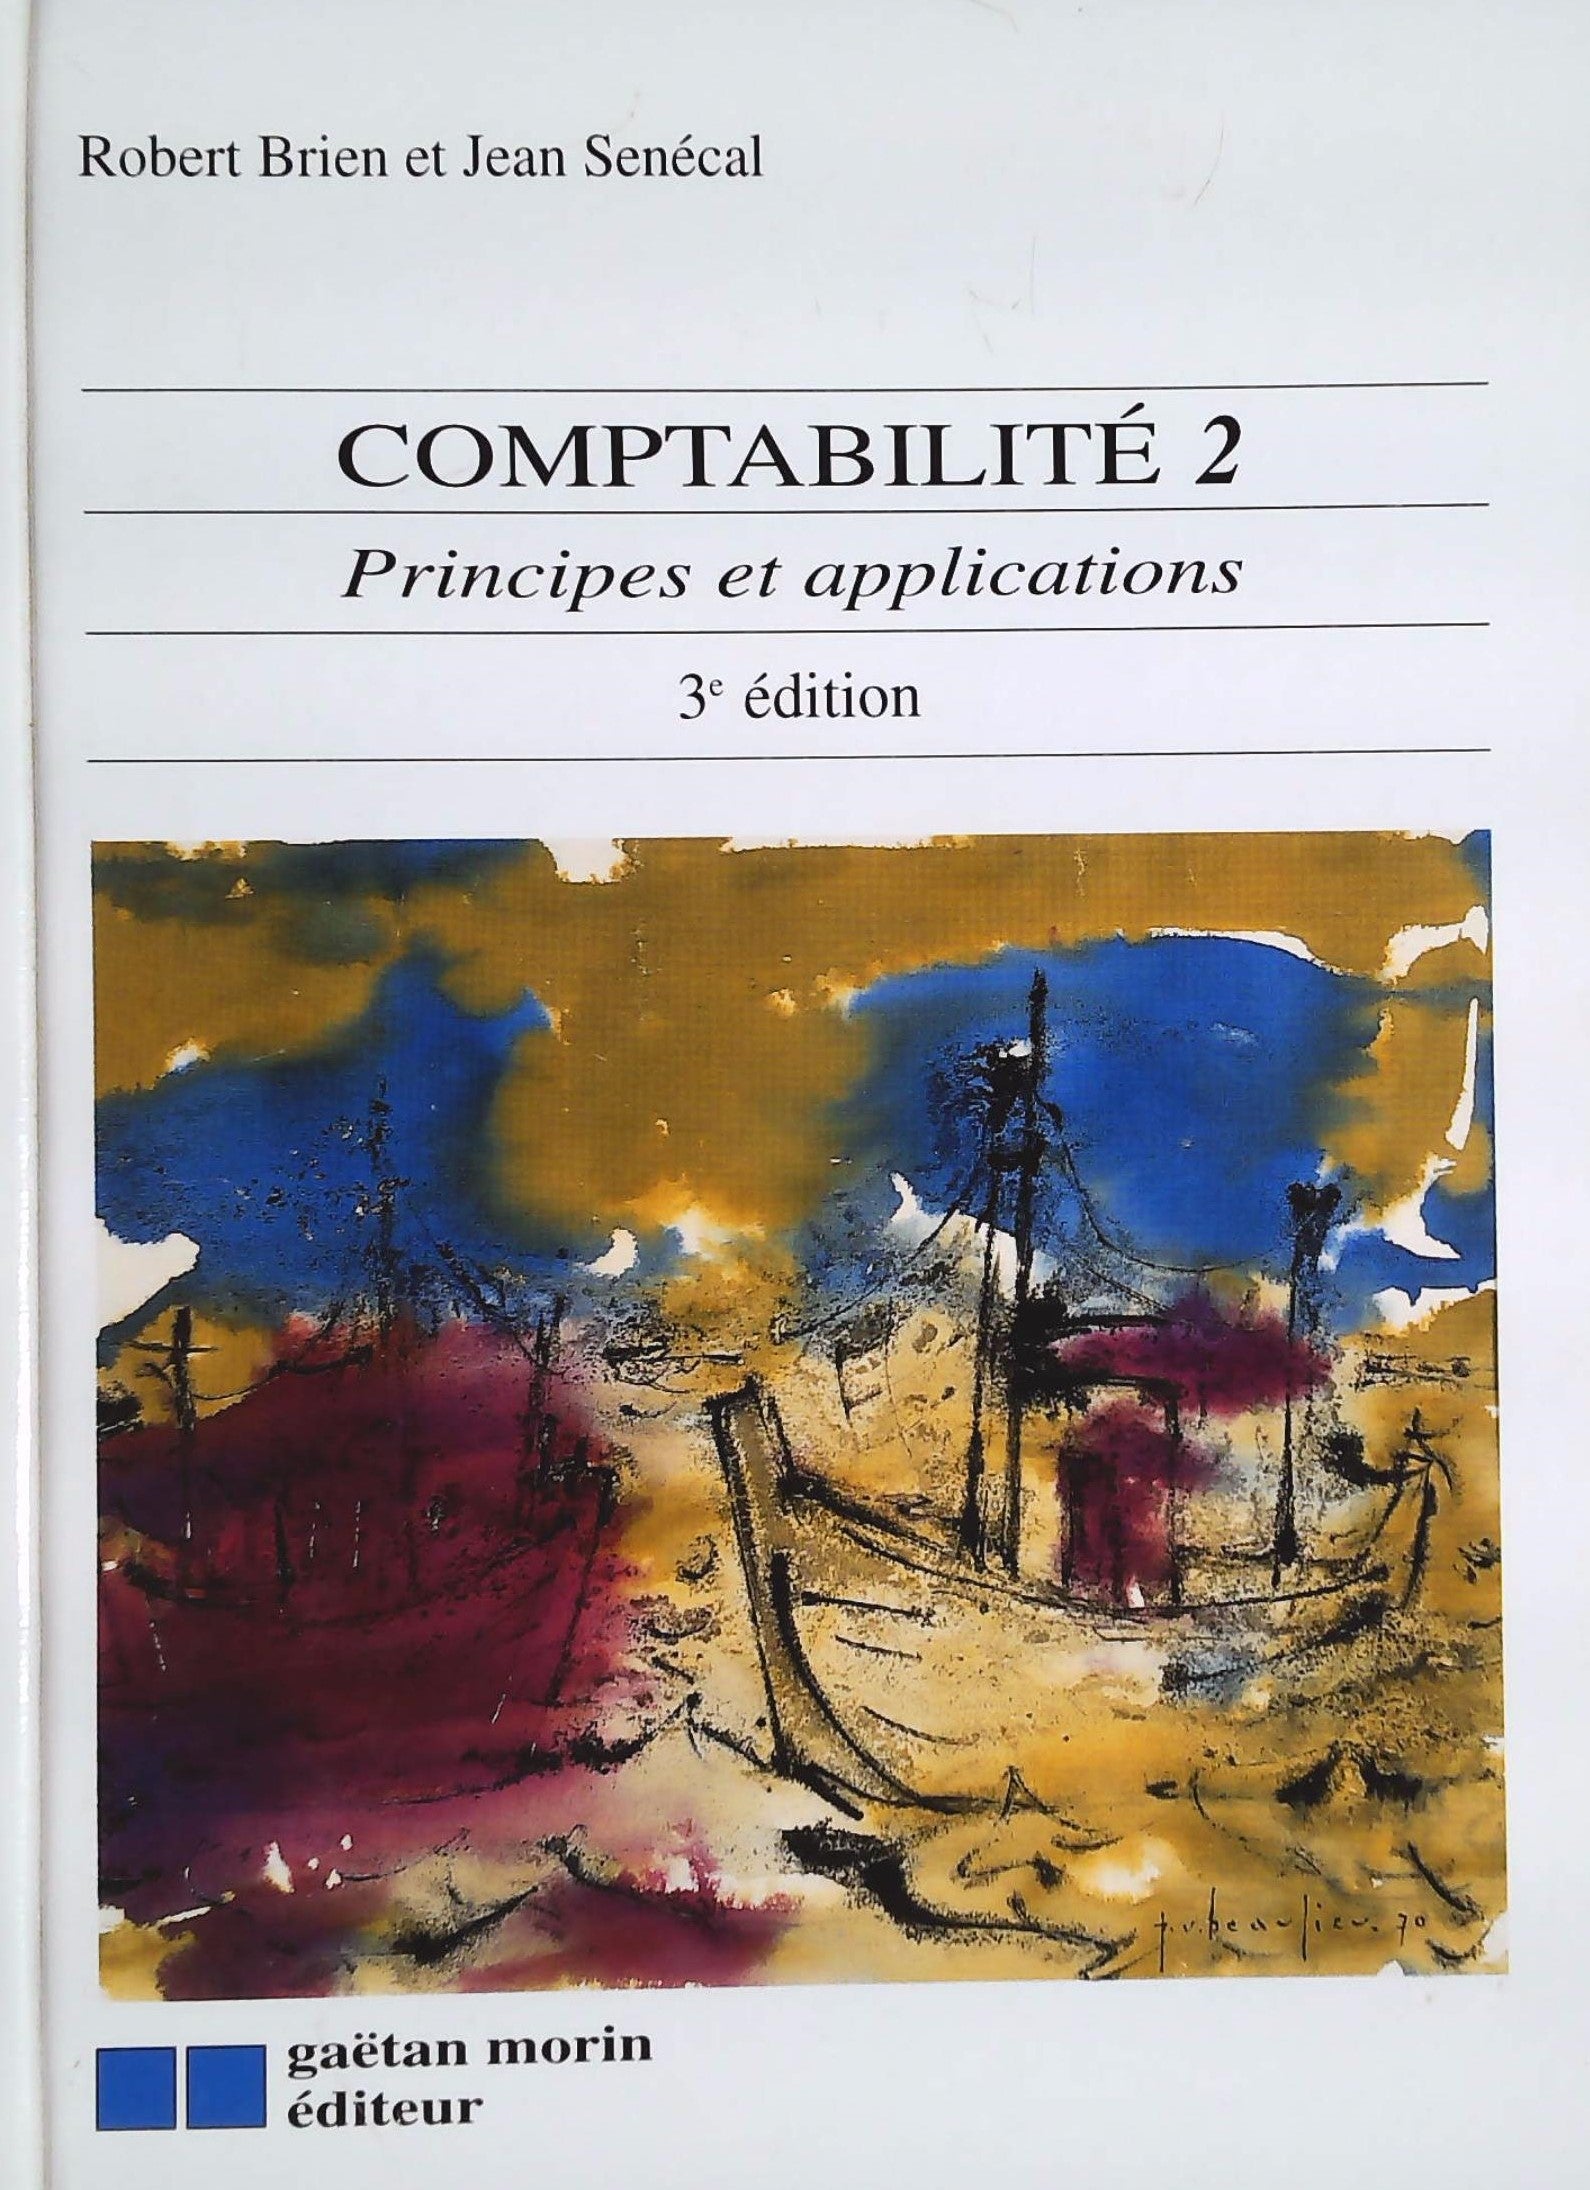 Livre ISBN 2891056035 Comptabilité 2: Principes et applications (3e édition) (Robert Briend)